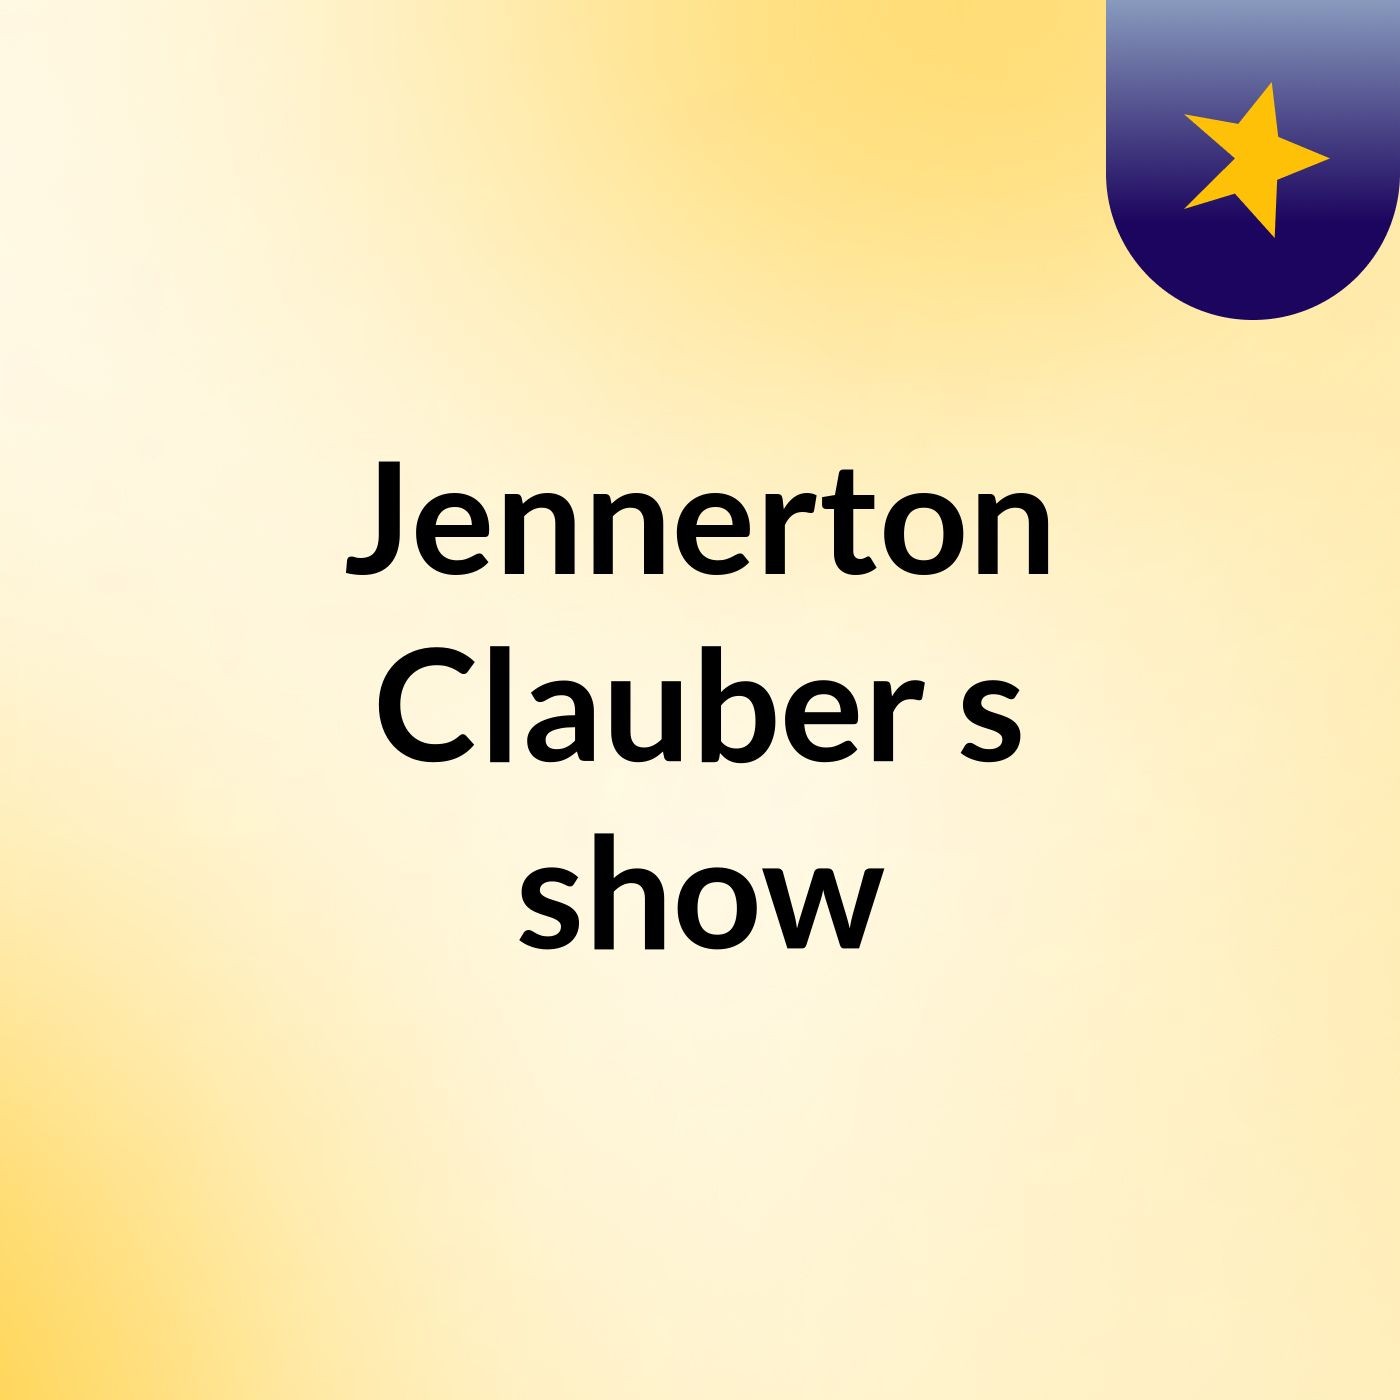 Jennerton Clauber's show